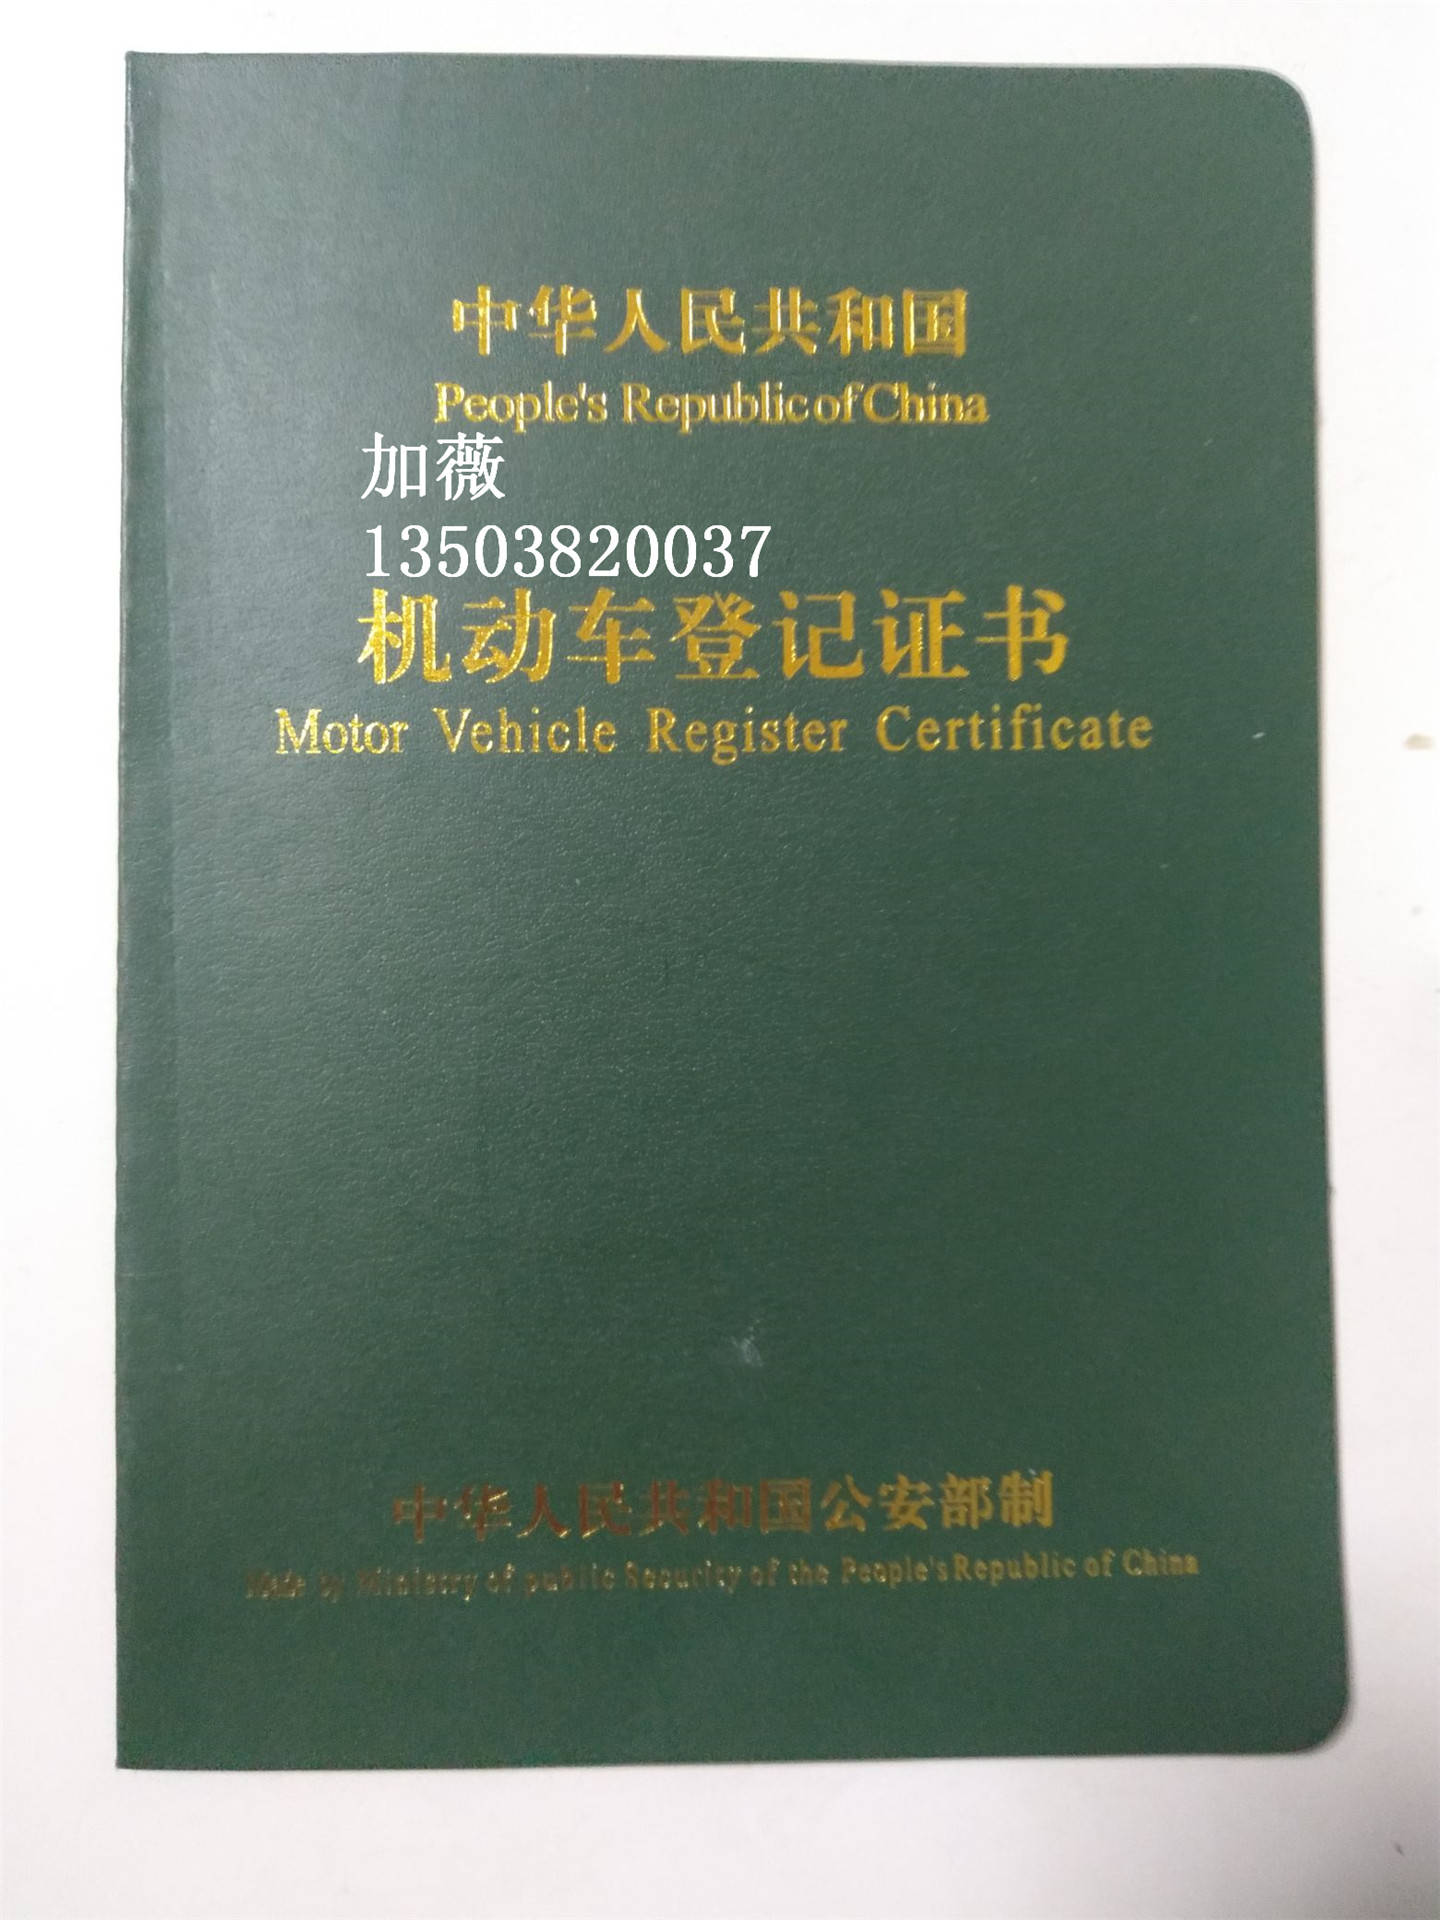 机动车登记证这个就是我们平常所说的"大绿本",机动车登记证书是车辆